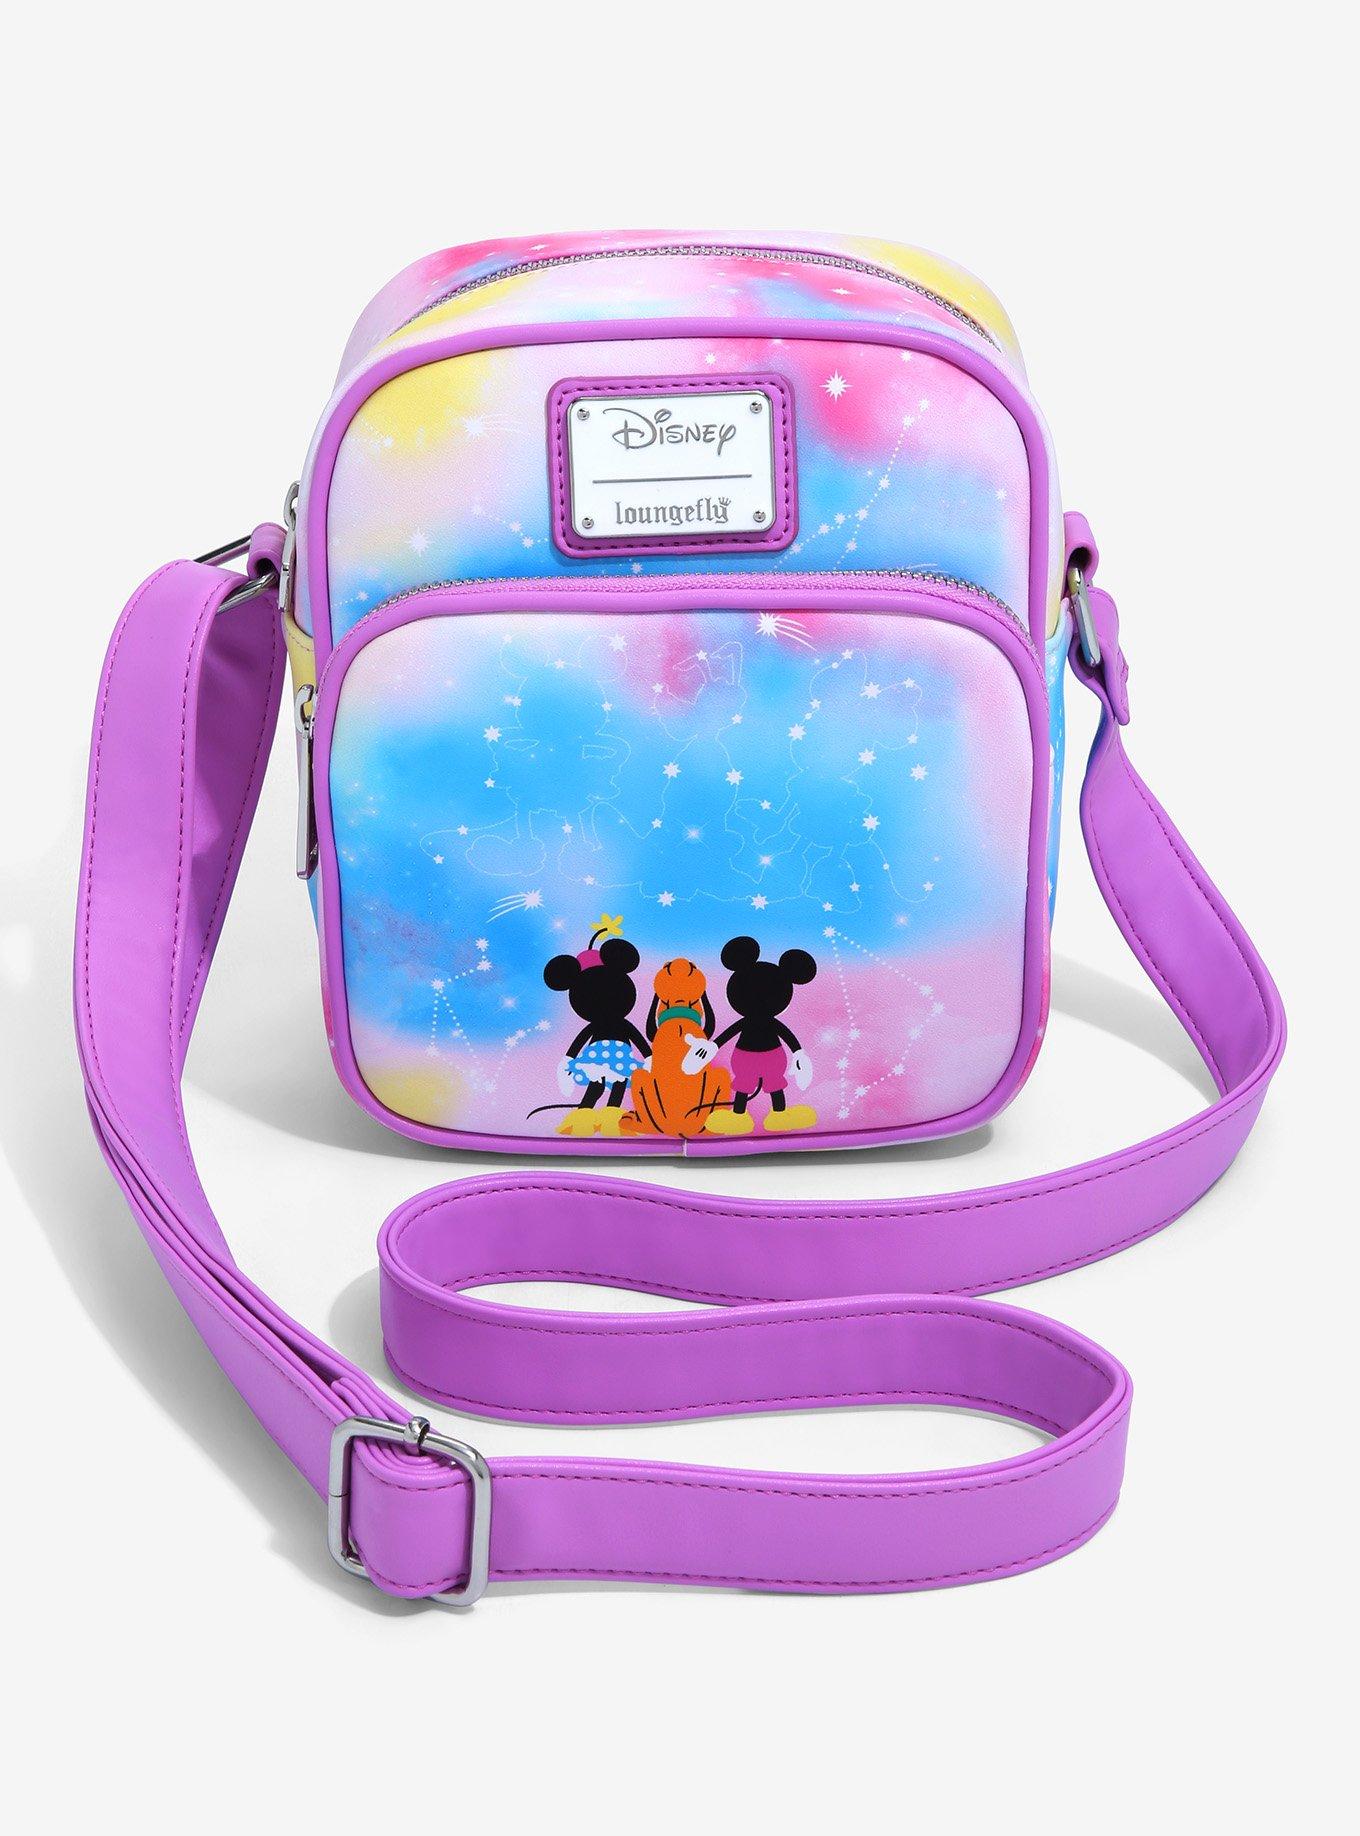 Mickey Mouse Tasche, umhängetasche für mädchen, Minnie Mouse